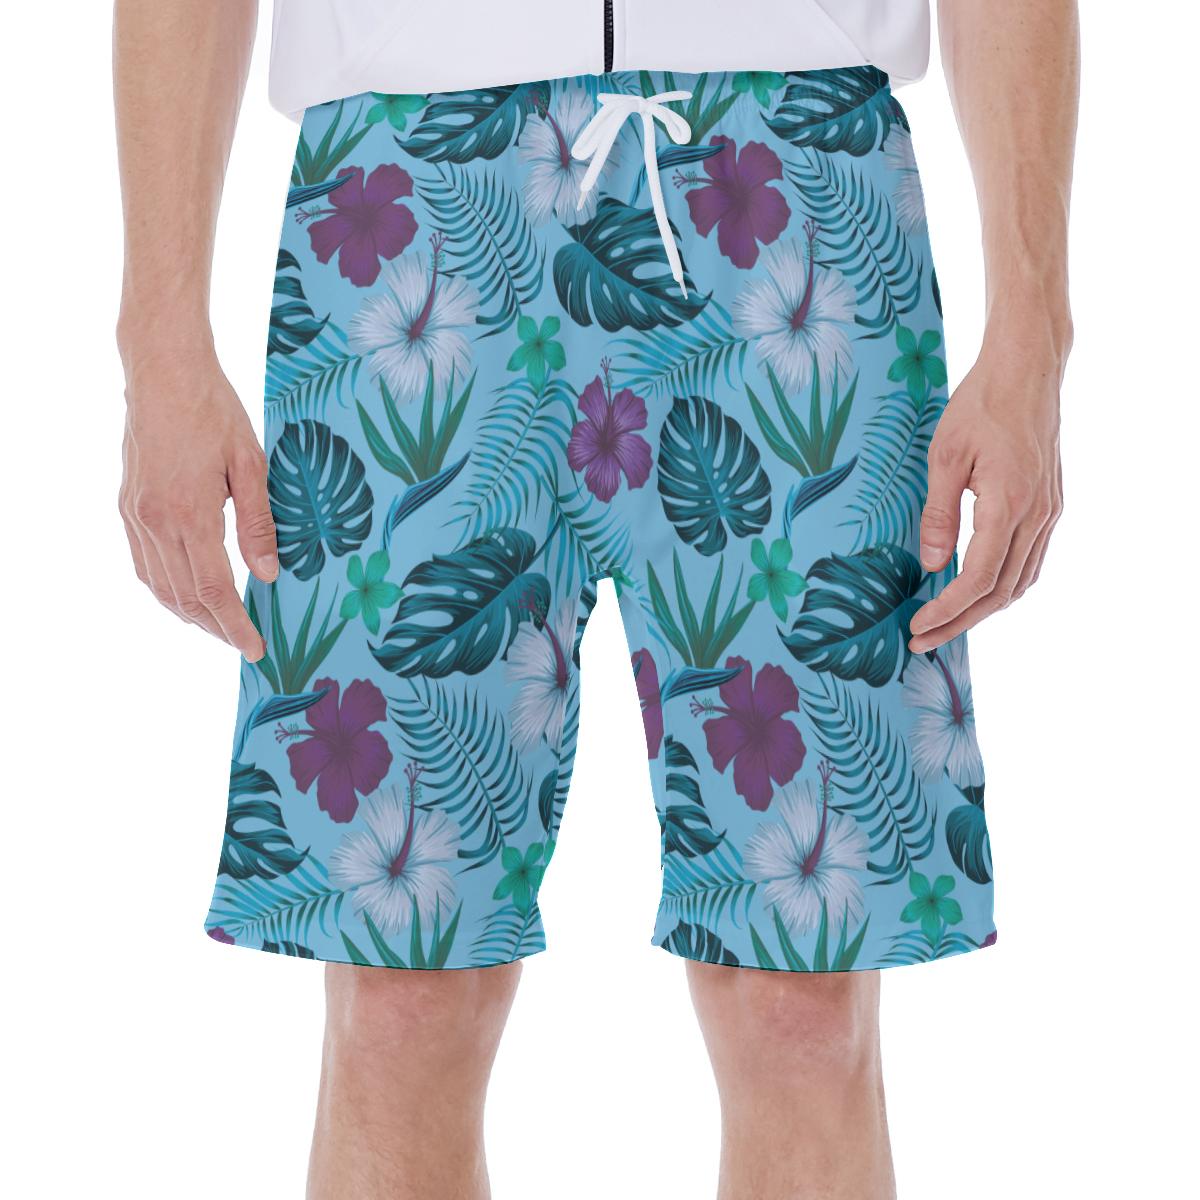 Bañador con estampado floral para hombre, size XL, shorts de playa, piscina.